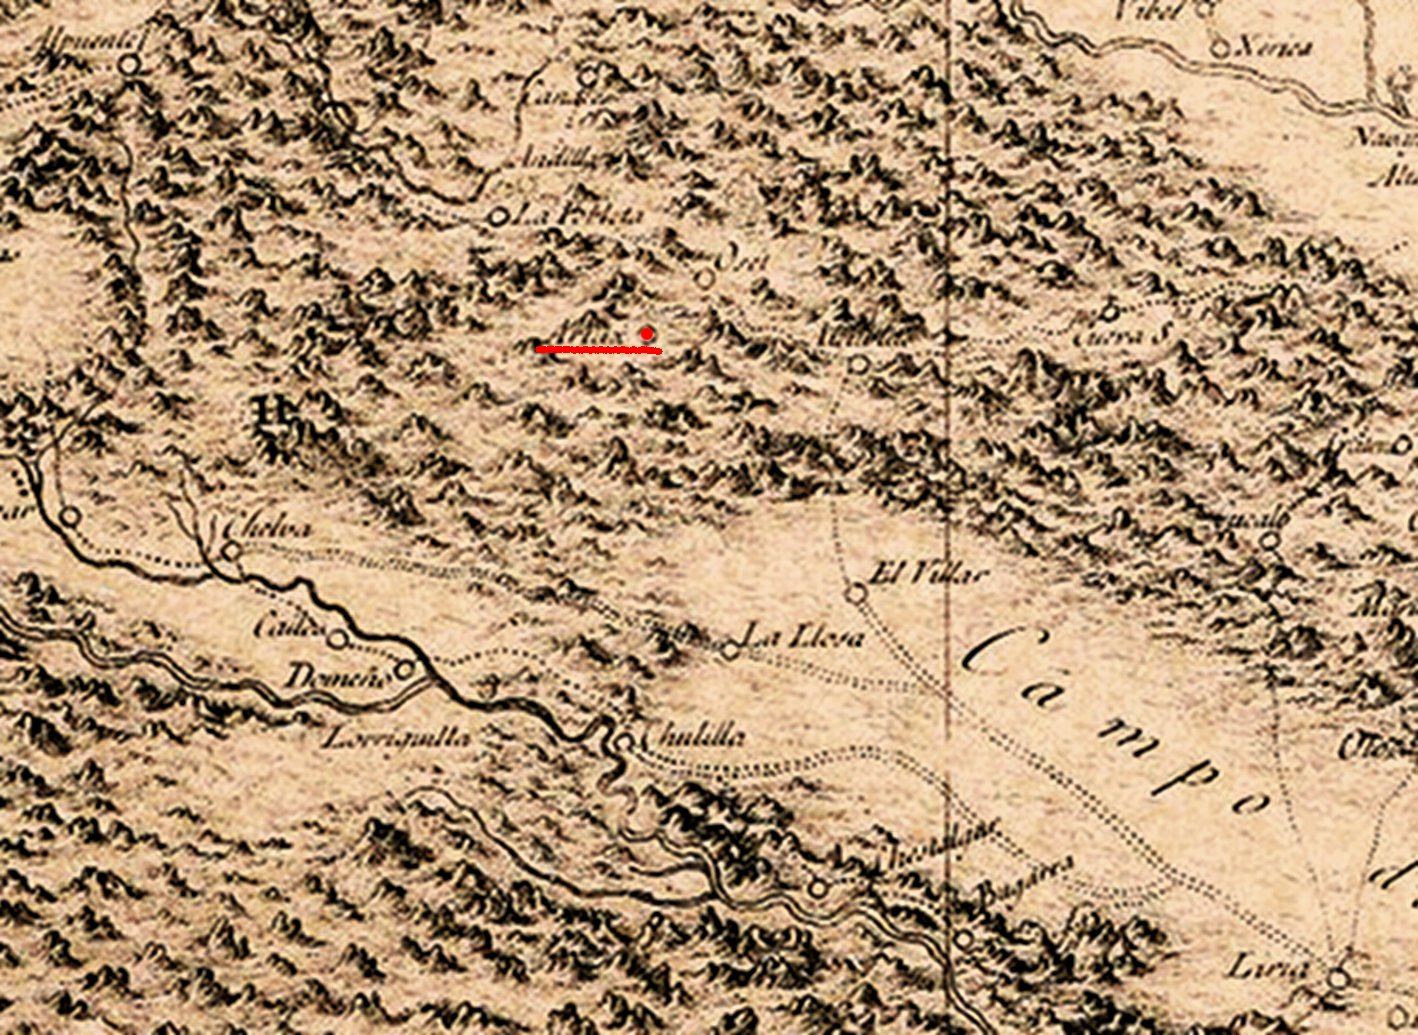 Lugar del mapa donde aparece Artax